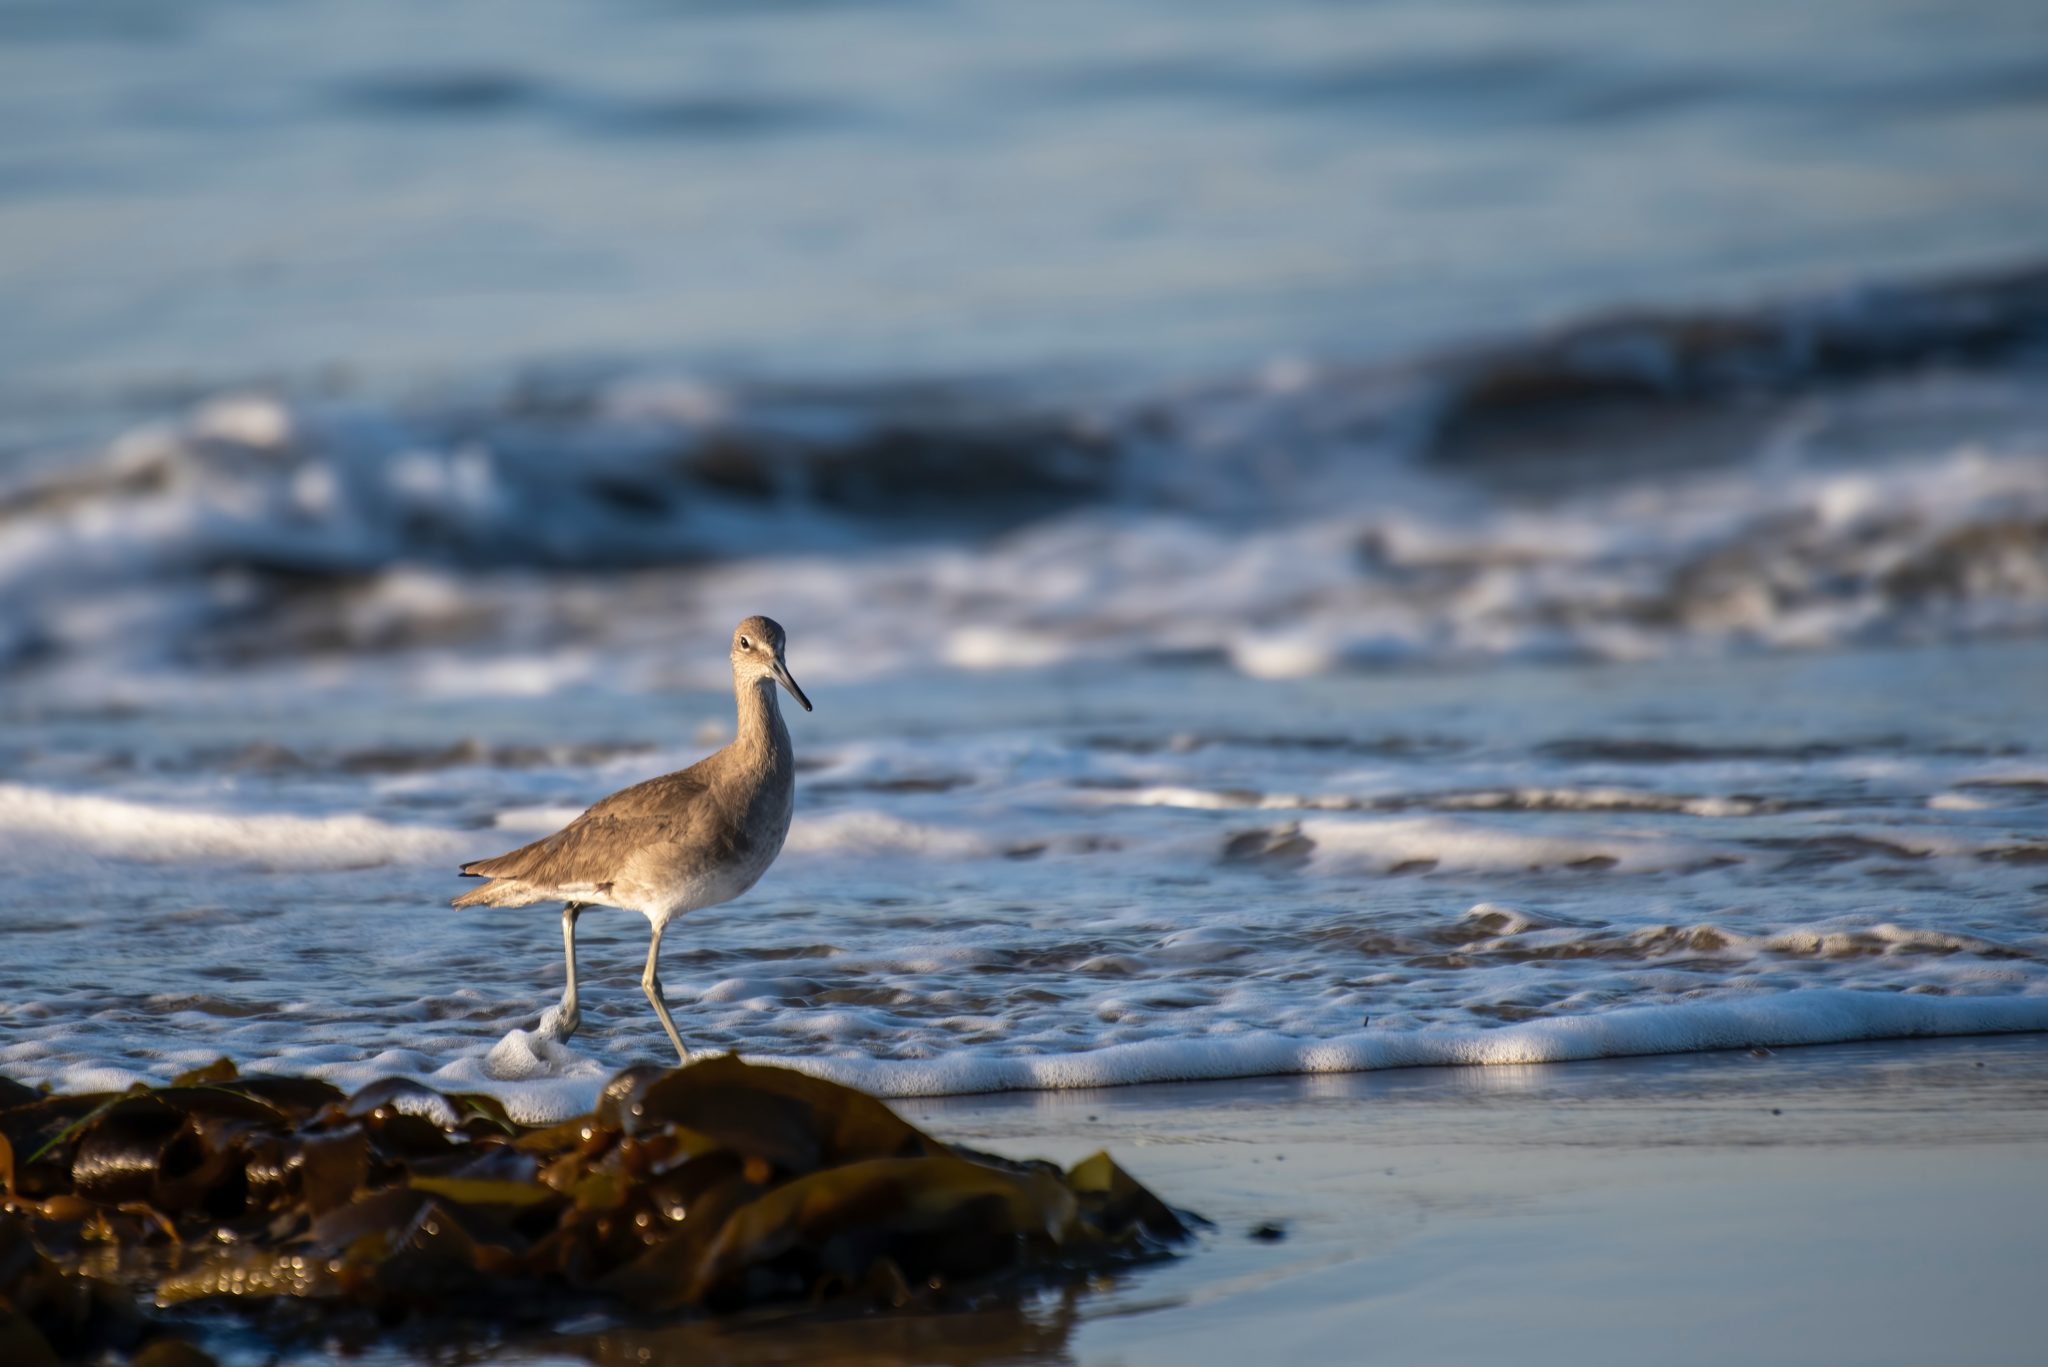 Vogelgrippe: Ein Seevogel sitzt am Strand. Im Vordergrund liegt Seegras